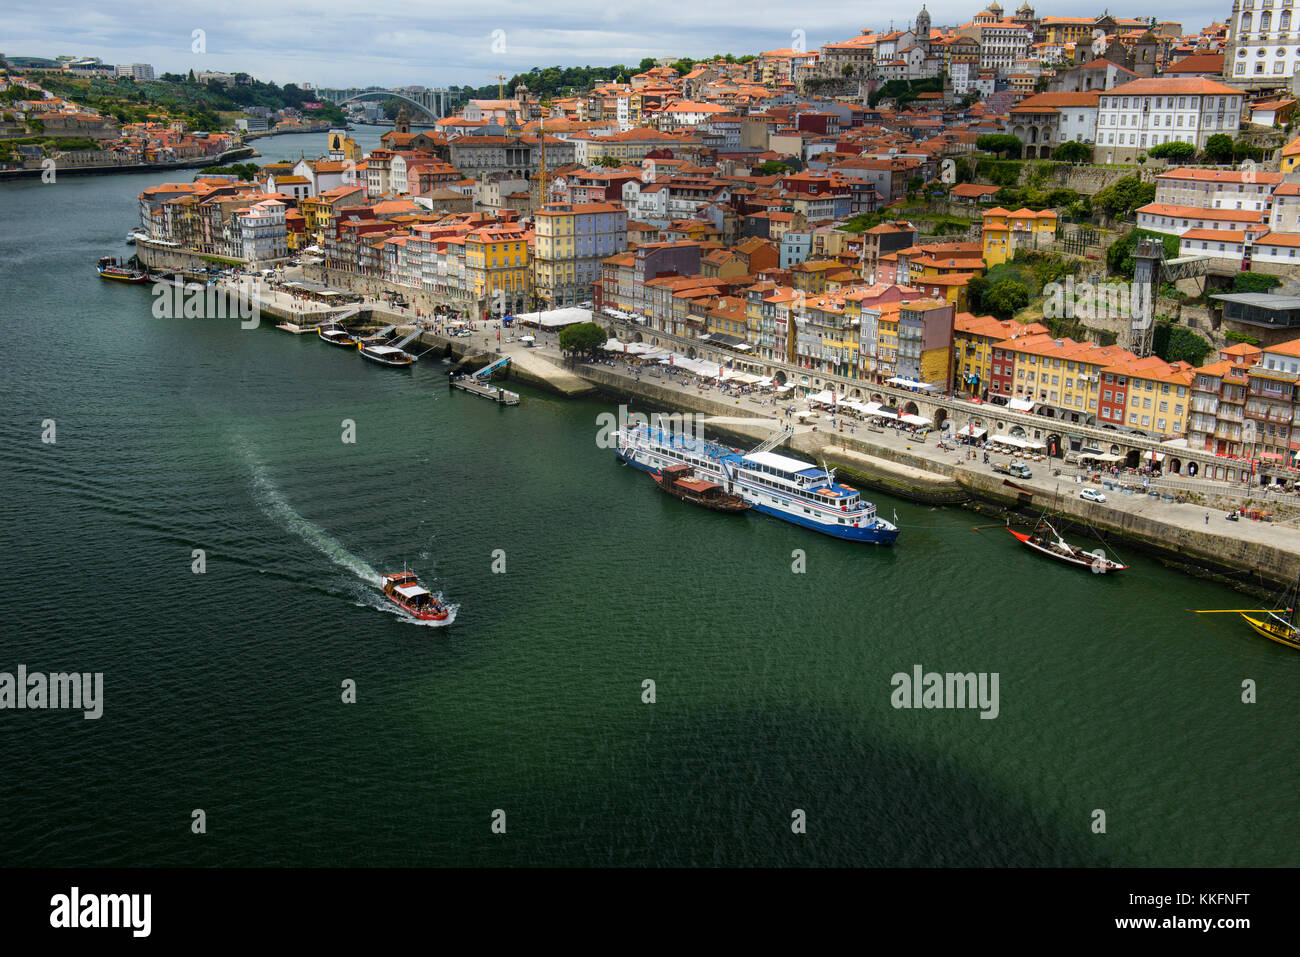 Old town of Ribeira, Porto, Portugal Stock Photo